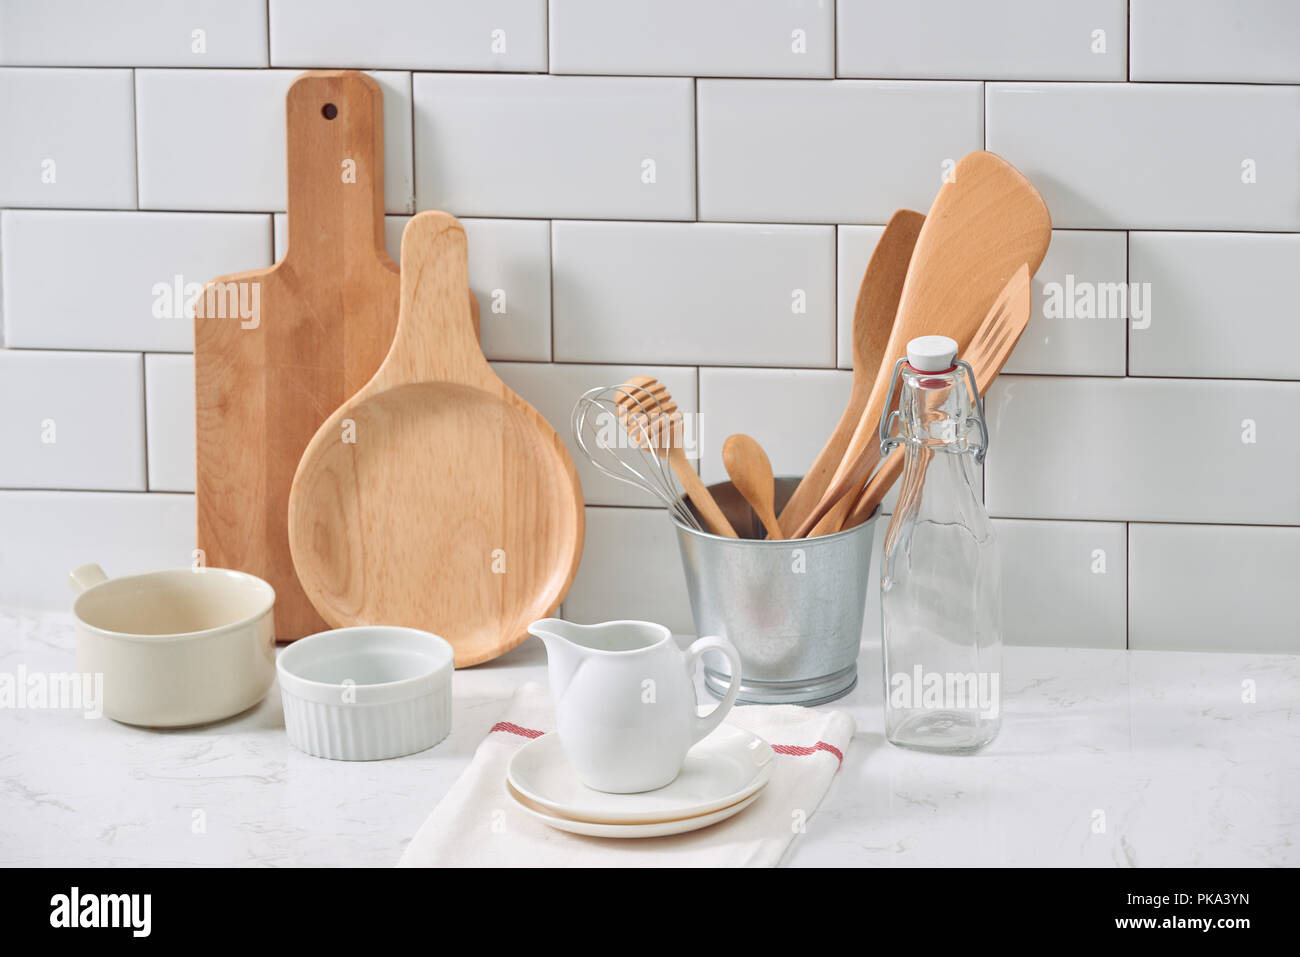 Einfache rustikale Küchenutensilien gegen weiße Holz Wand: grobe Keramik Topf mit Holz kochen Utensil, Stapel von keramischen Schalen, Kannen und Schalen aus Holz. Stockfoto